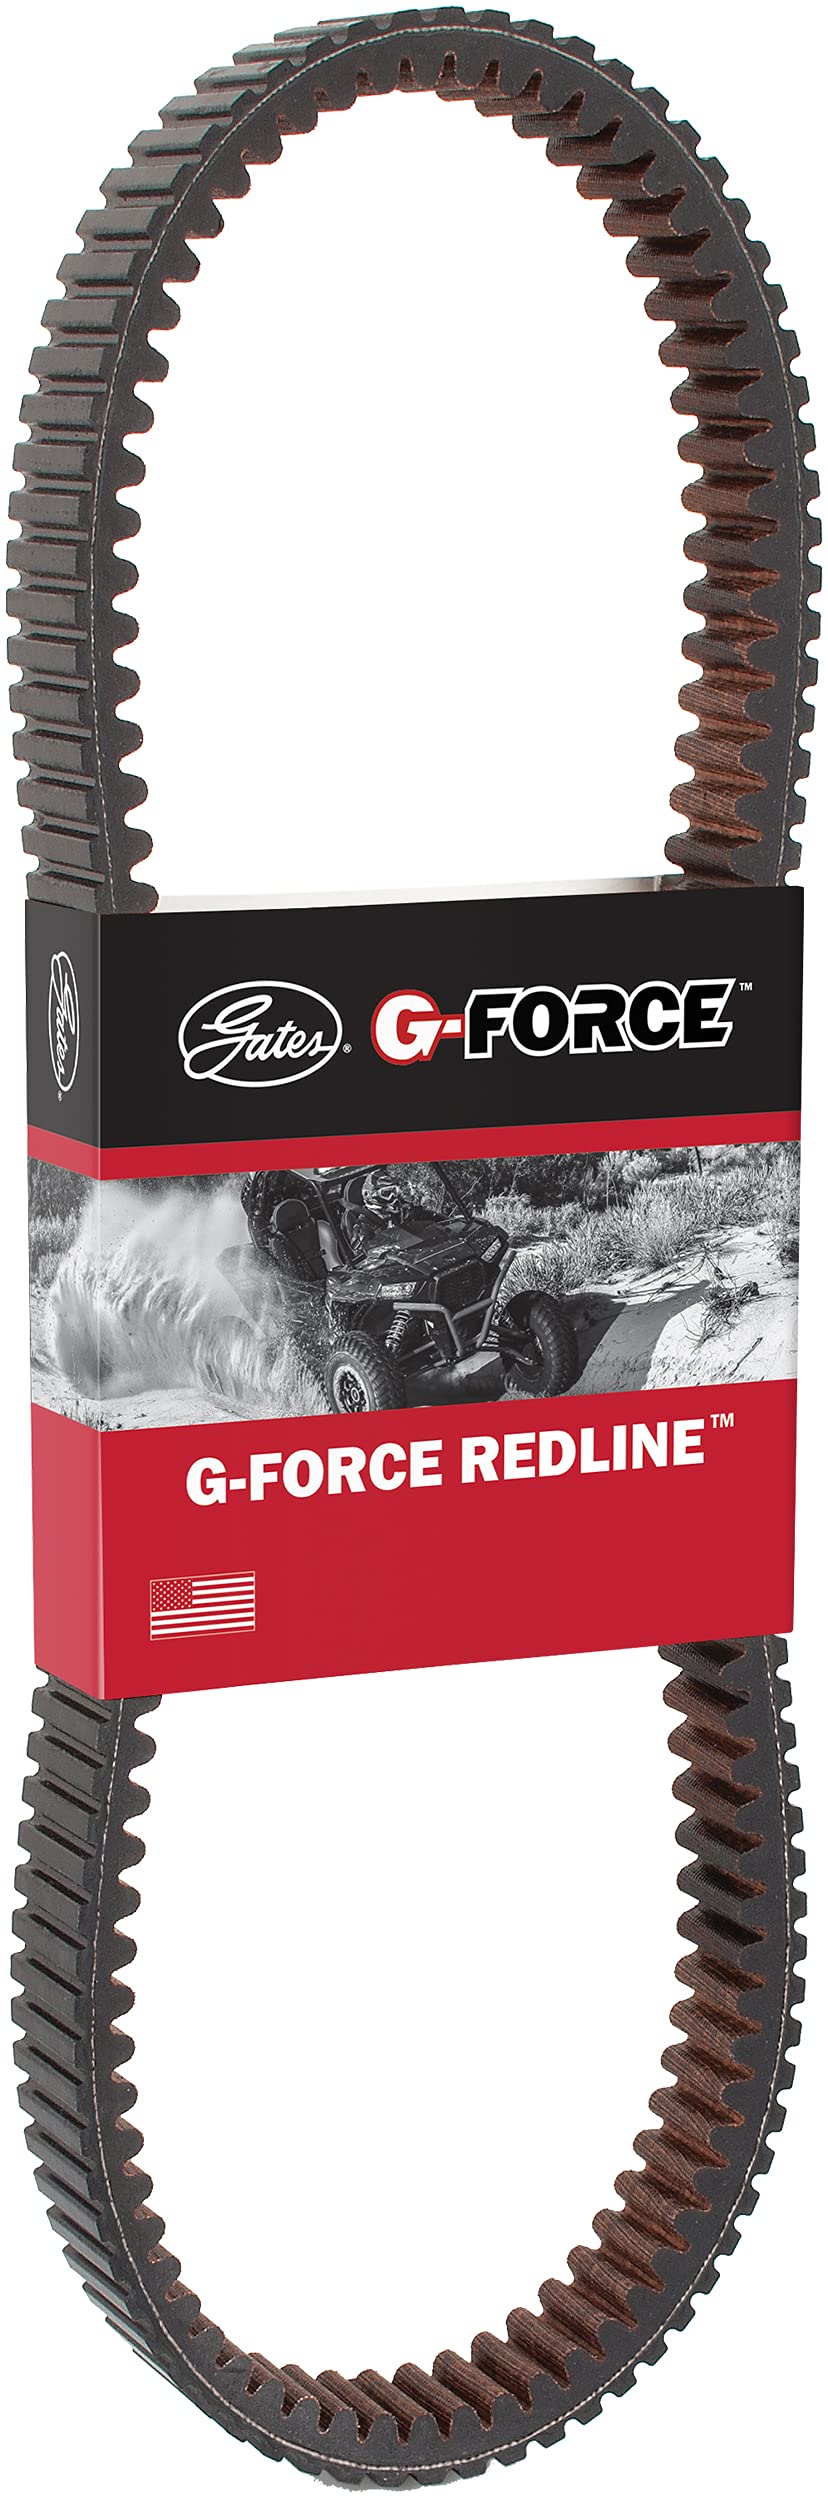 Gates 50R4289 G-Force RedLine Continuously Variable Transmission (CVT) Belt, Black